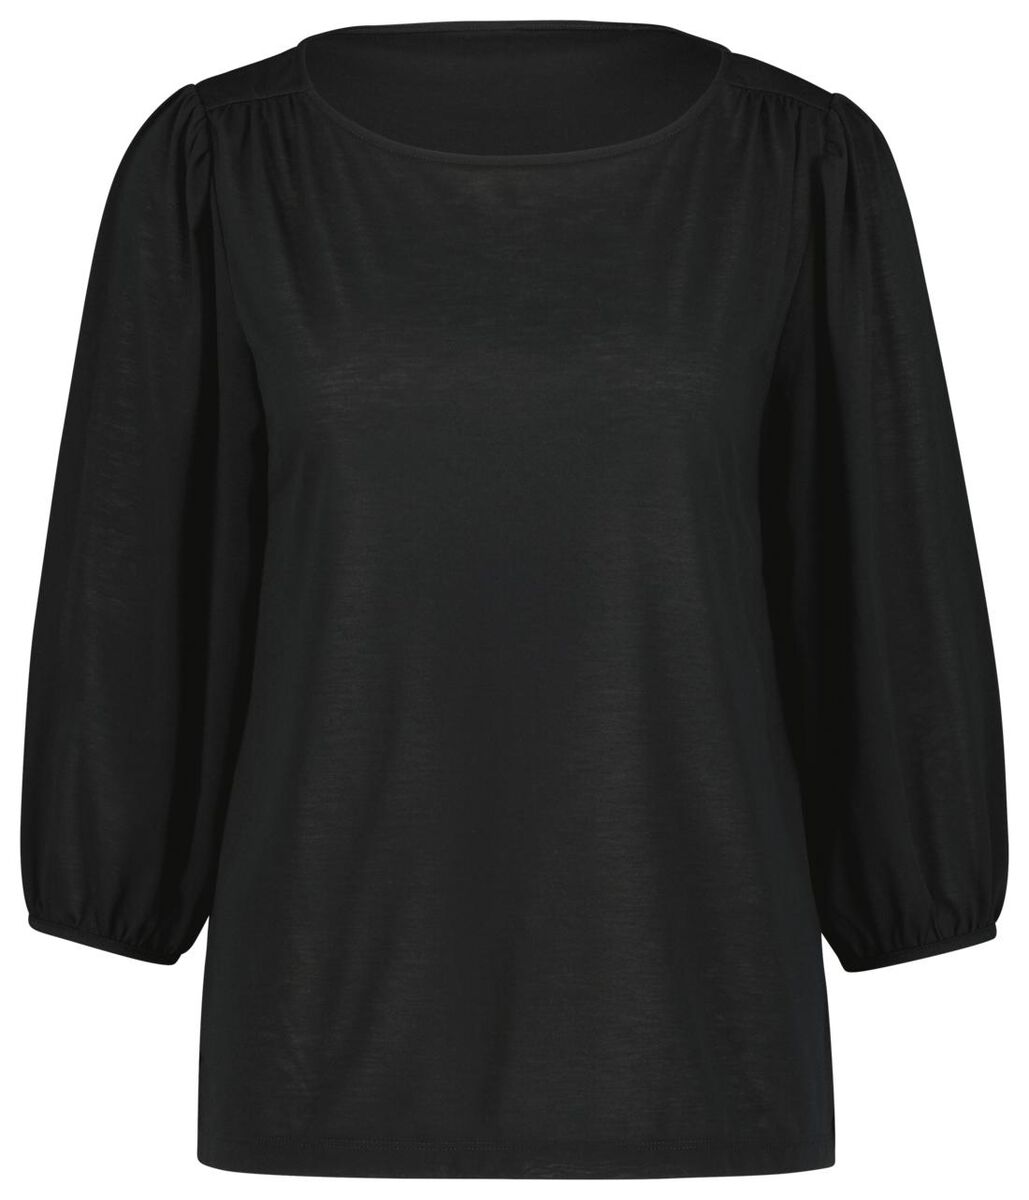 dames t-shirt met pofmouw zwart S - 36234156 - HEMA